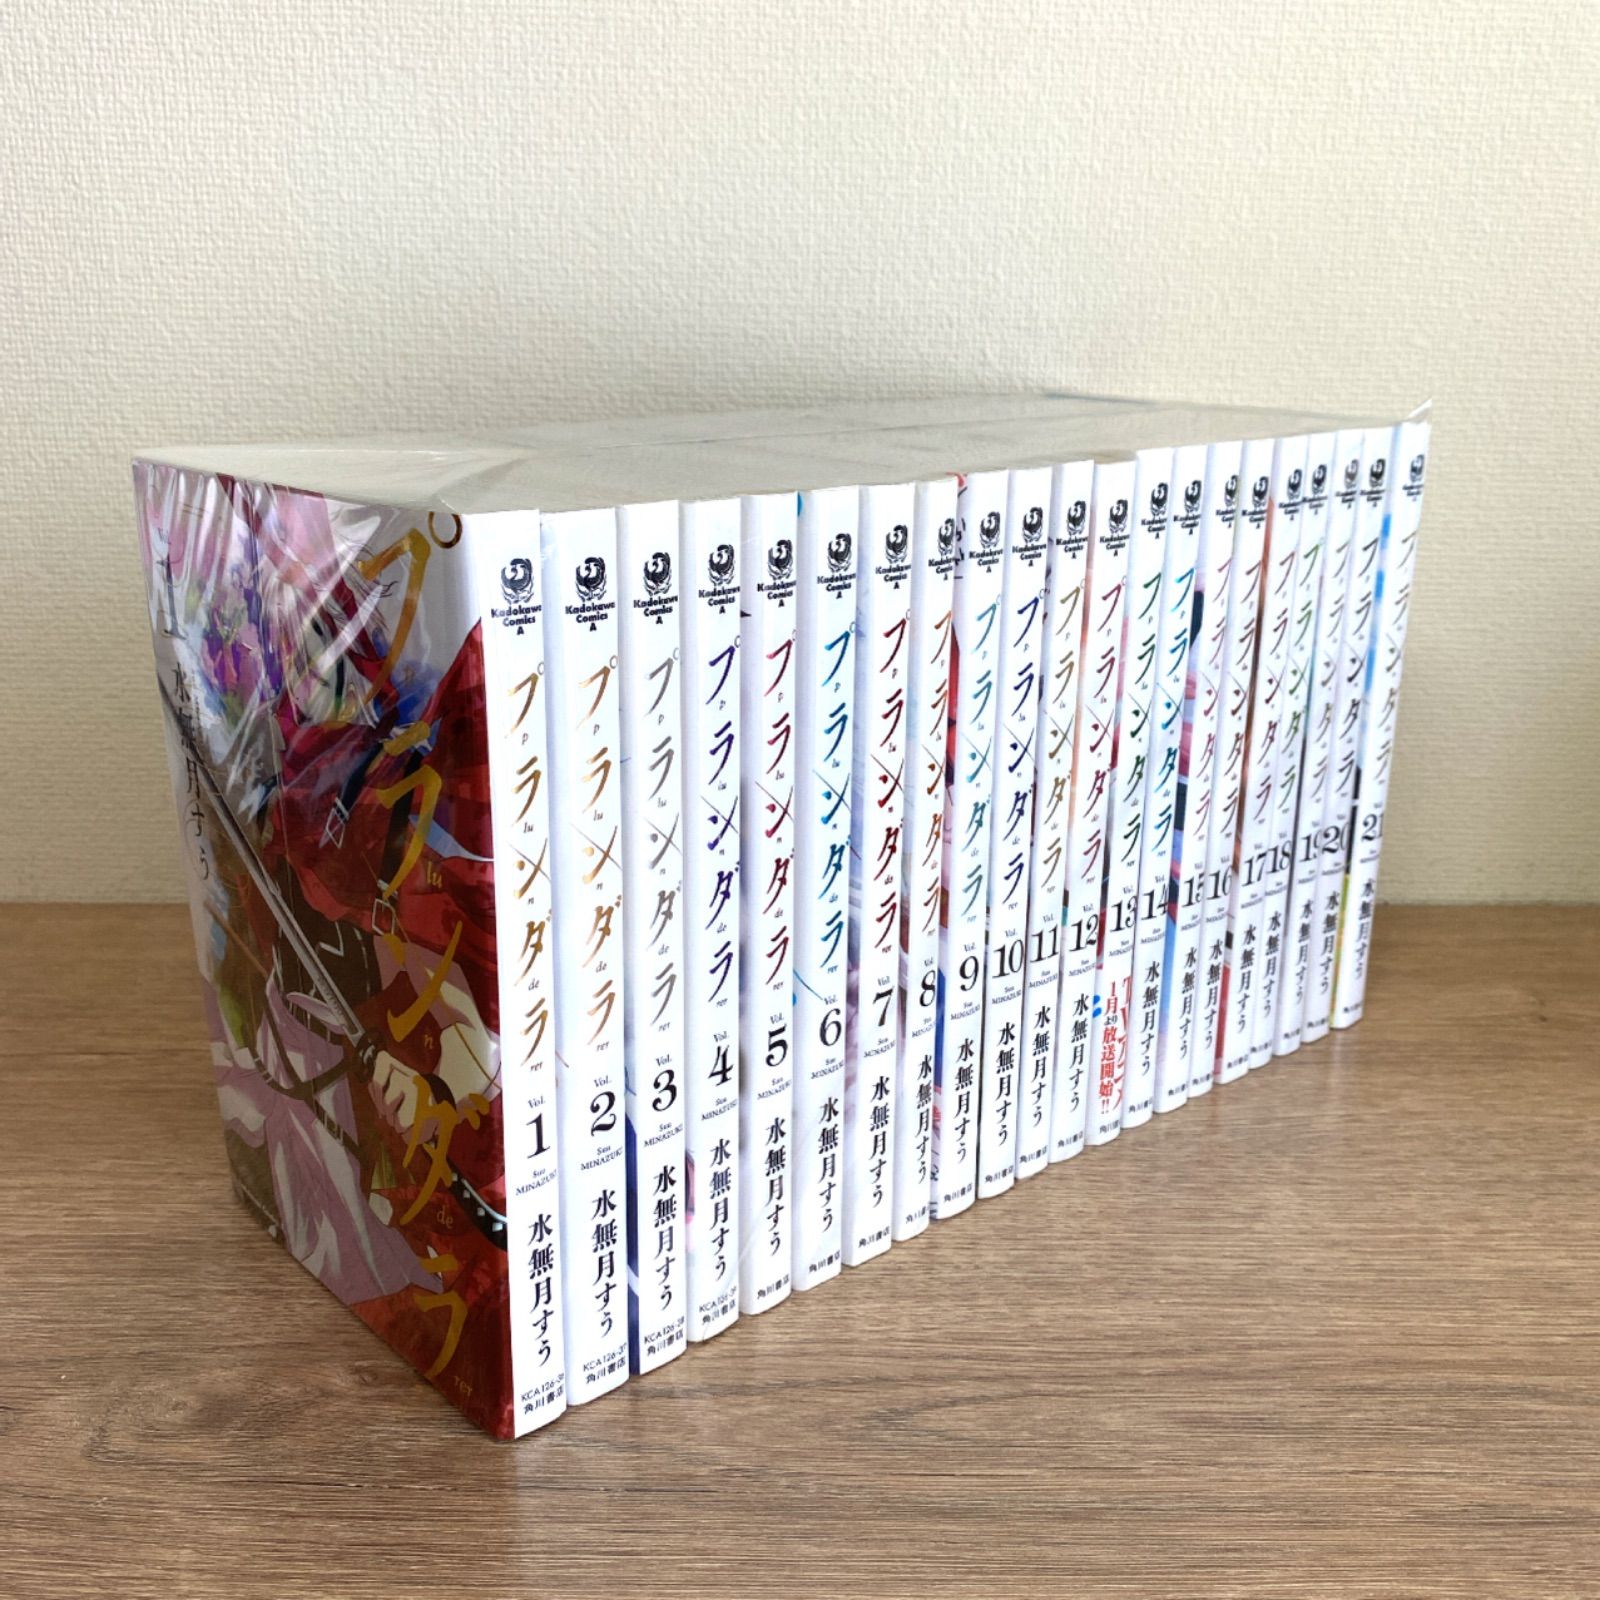 プランダラ 全巻 21冊 初版+stage01.getbooks.digiproduct.co.il